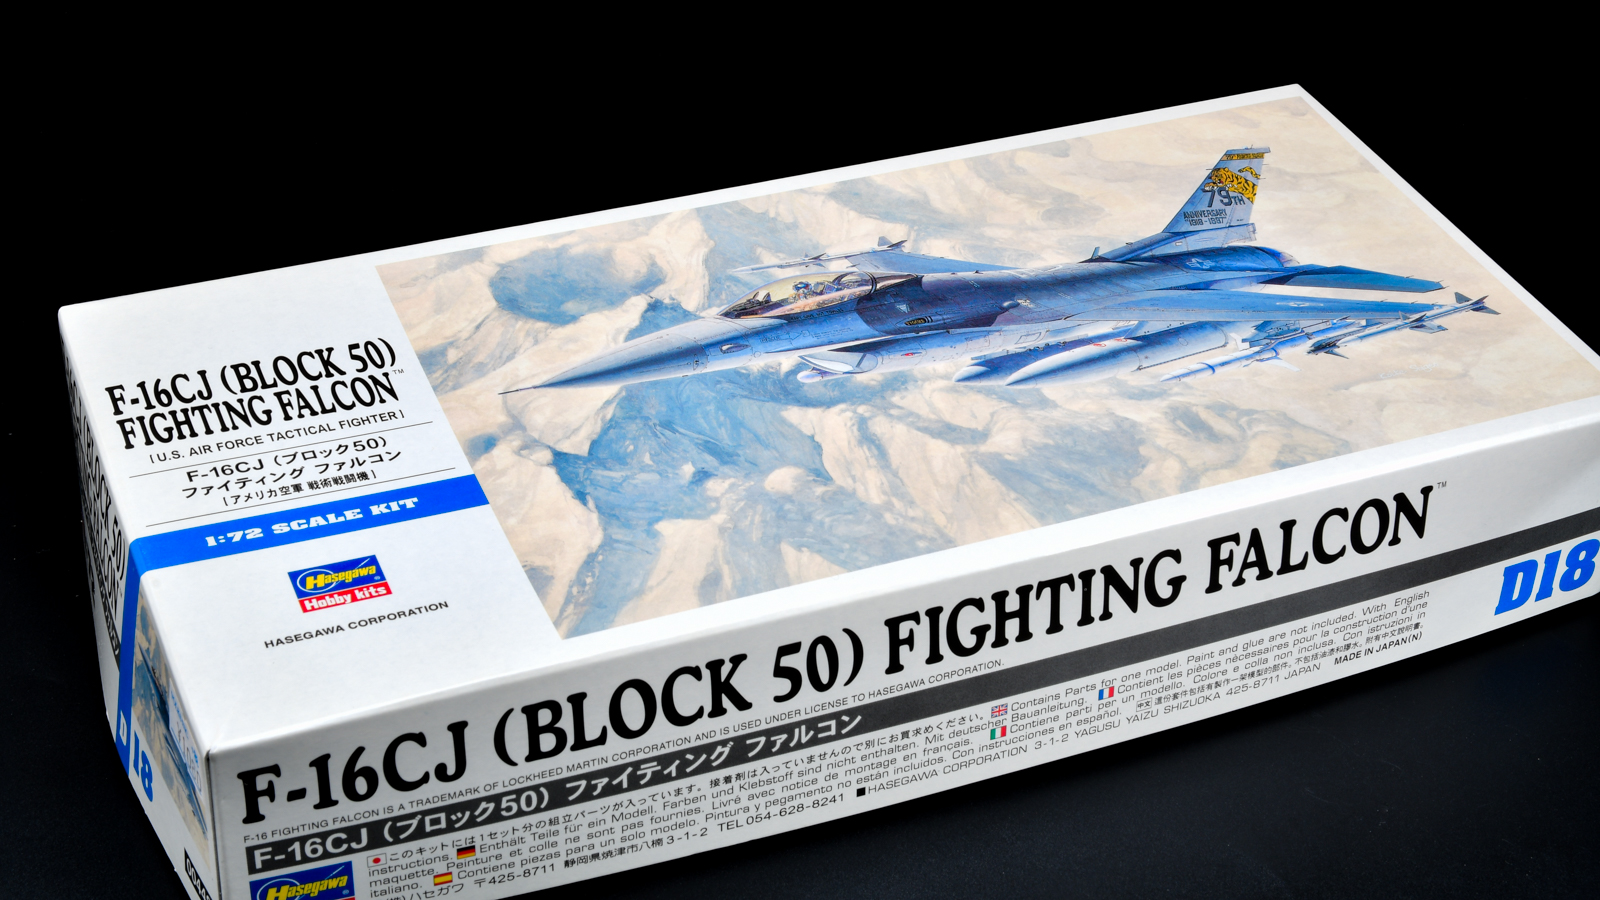 F-16戦闘機の進化がランナーに凝縮!!ハセガワ の定番「F-16CJ ブロック50」は飛行機模型のバリューセット!!! | nippper  ニッパーを握るすべての人と、モケイの楽しさをシェアするサイト